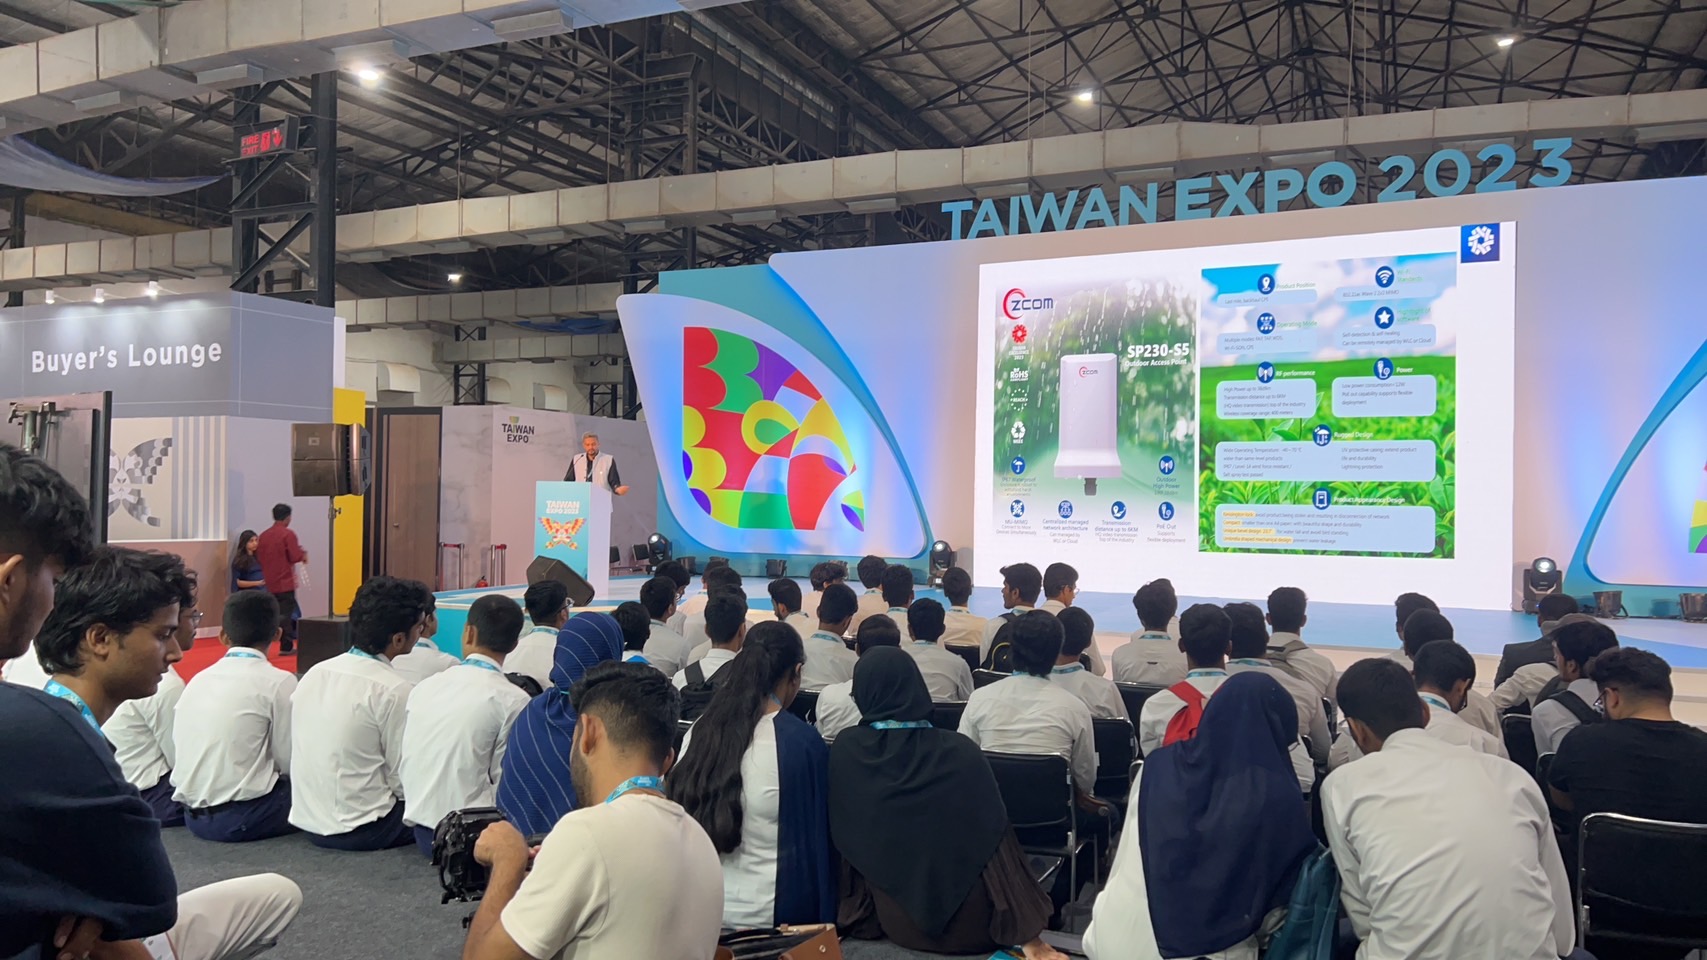 Taiwan Expo in India